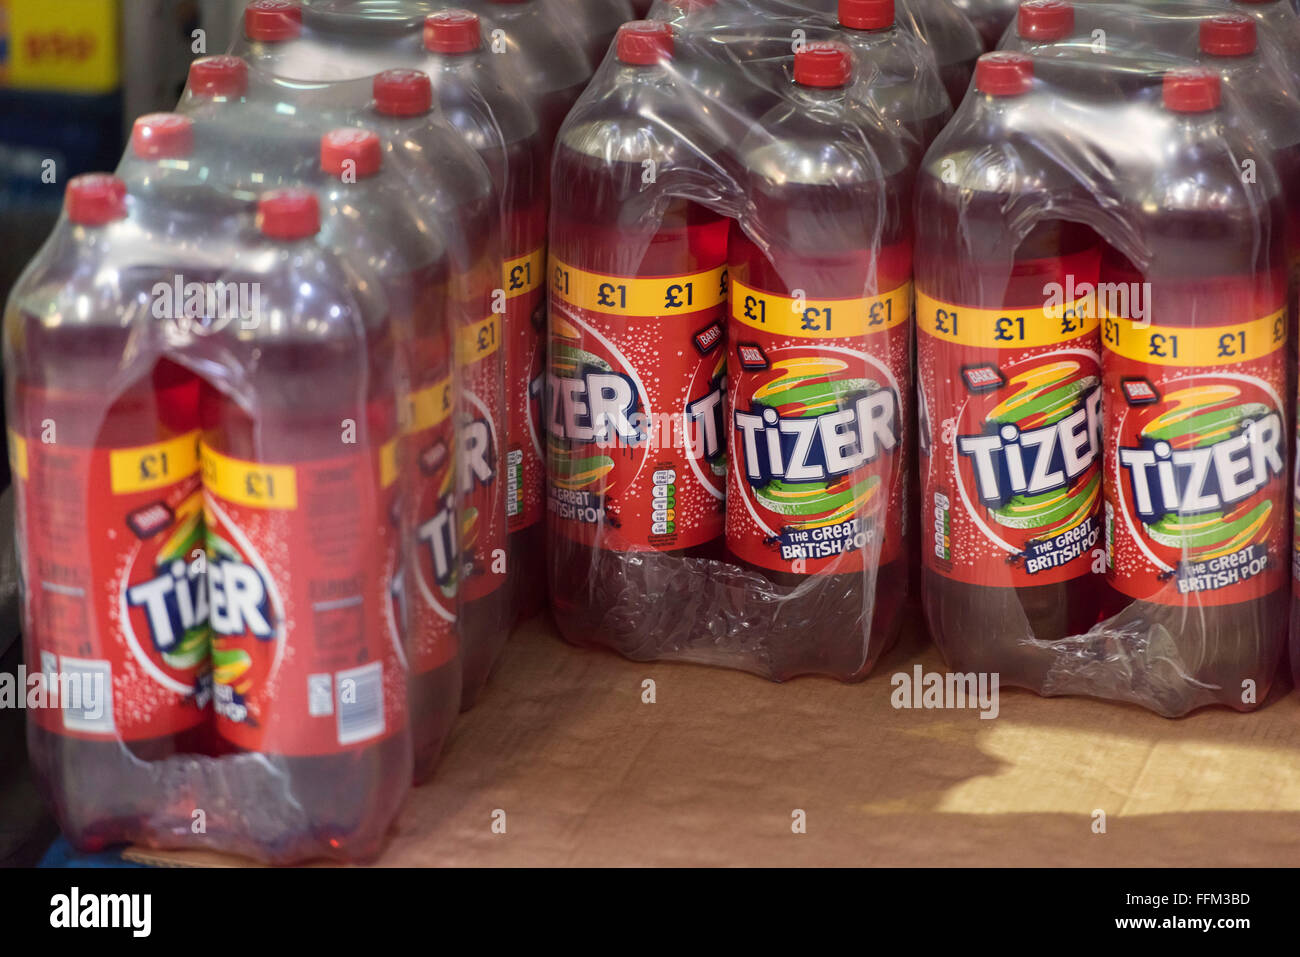 Bottiglie di zucchero di soft drink Tizer stoccati in un magazzino. Foto Stock